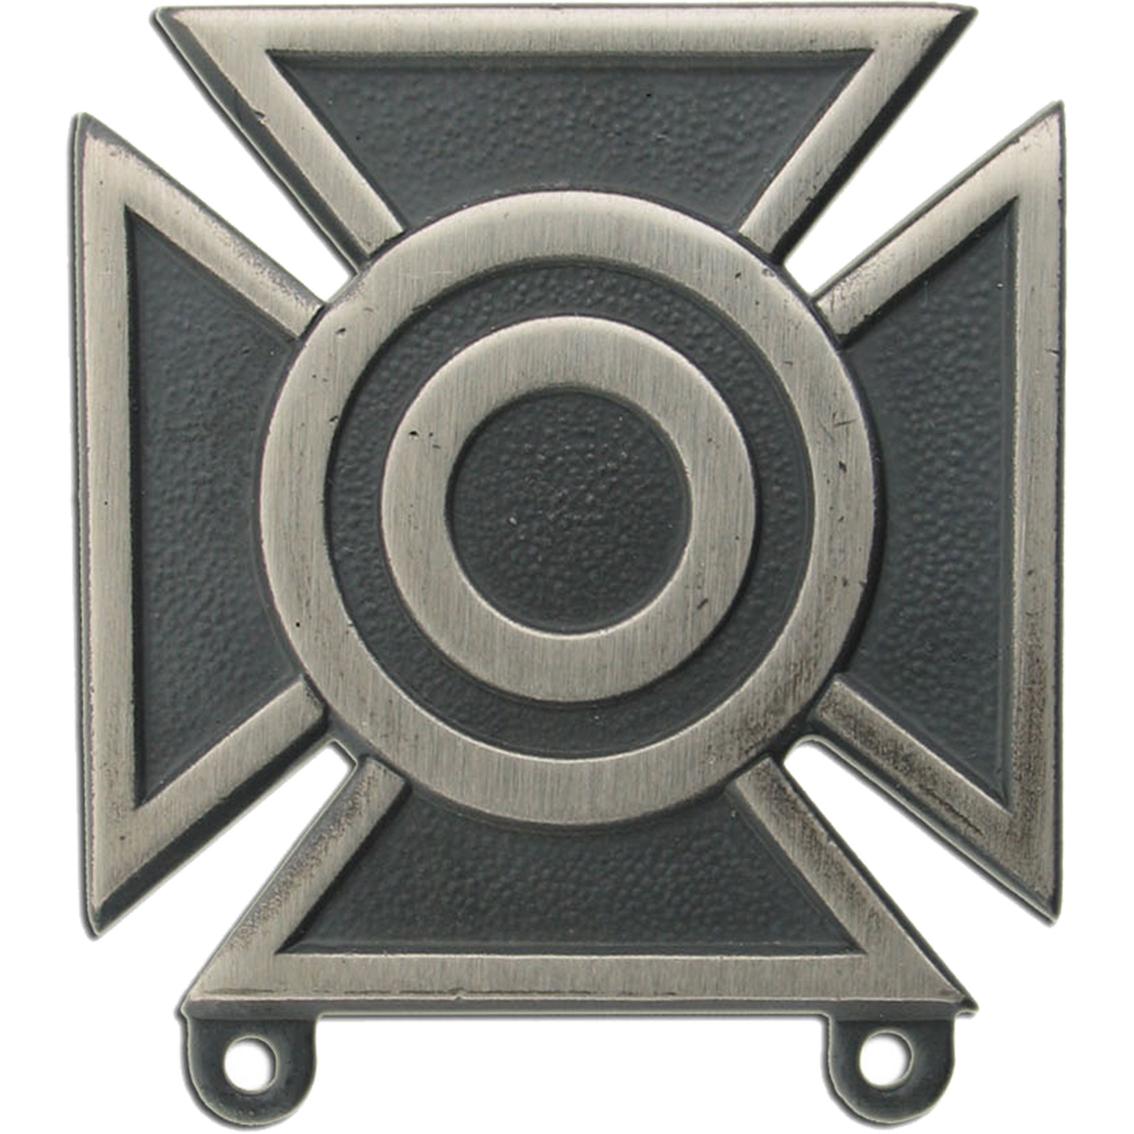 Army sharpshooter badge